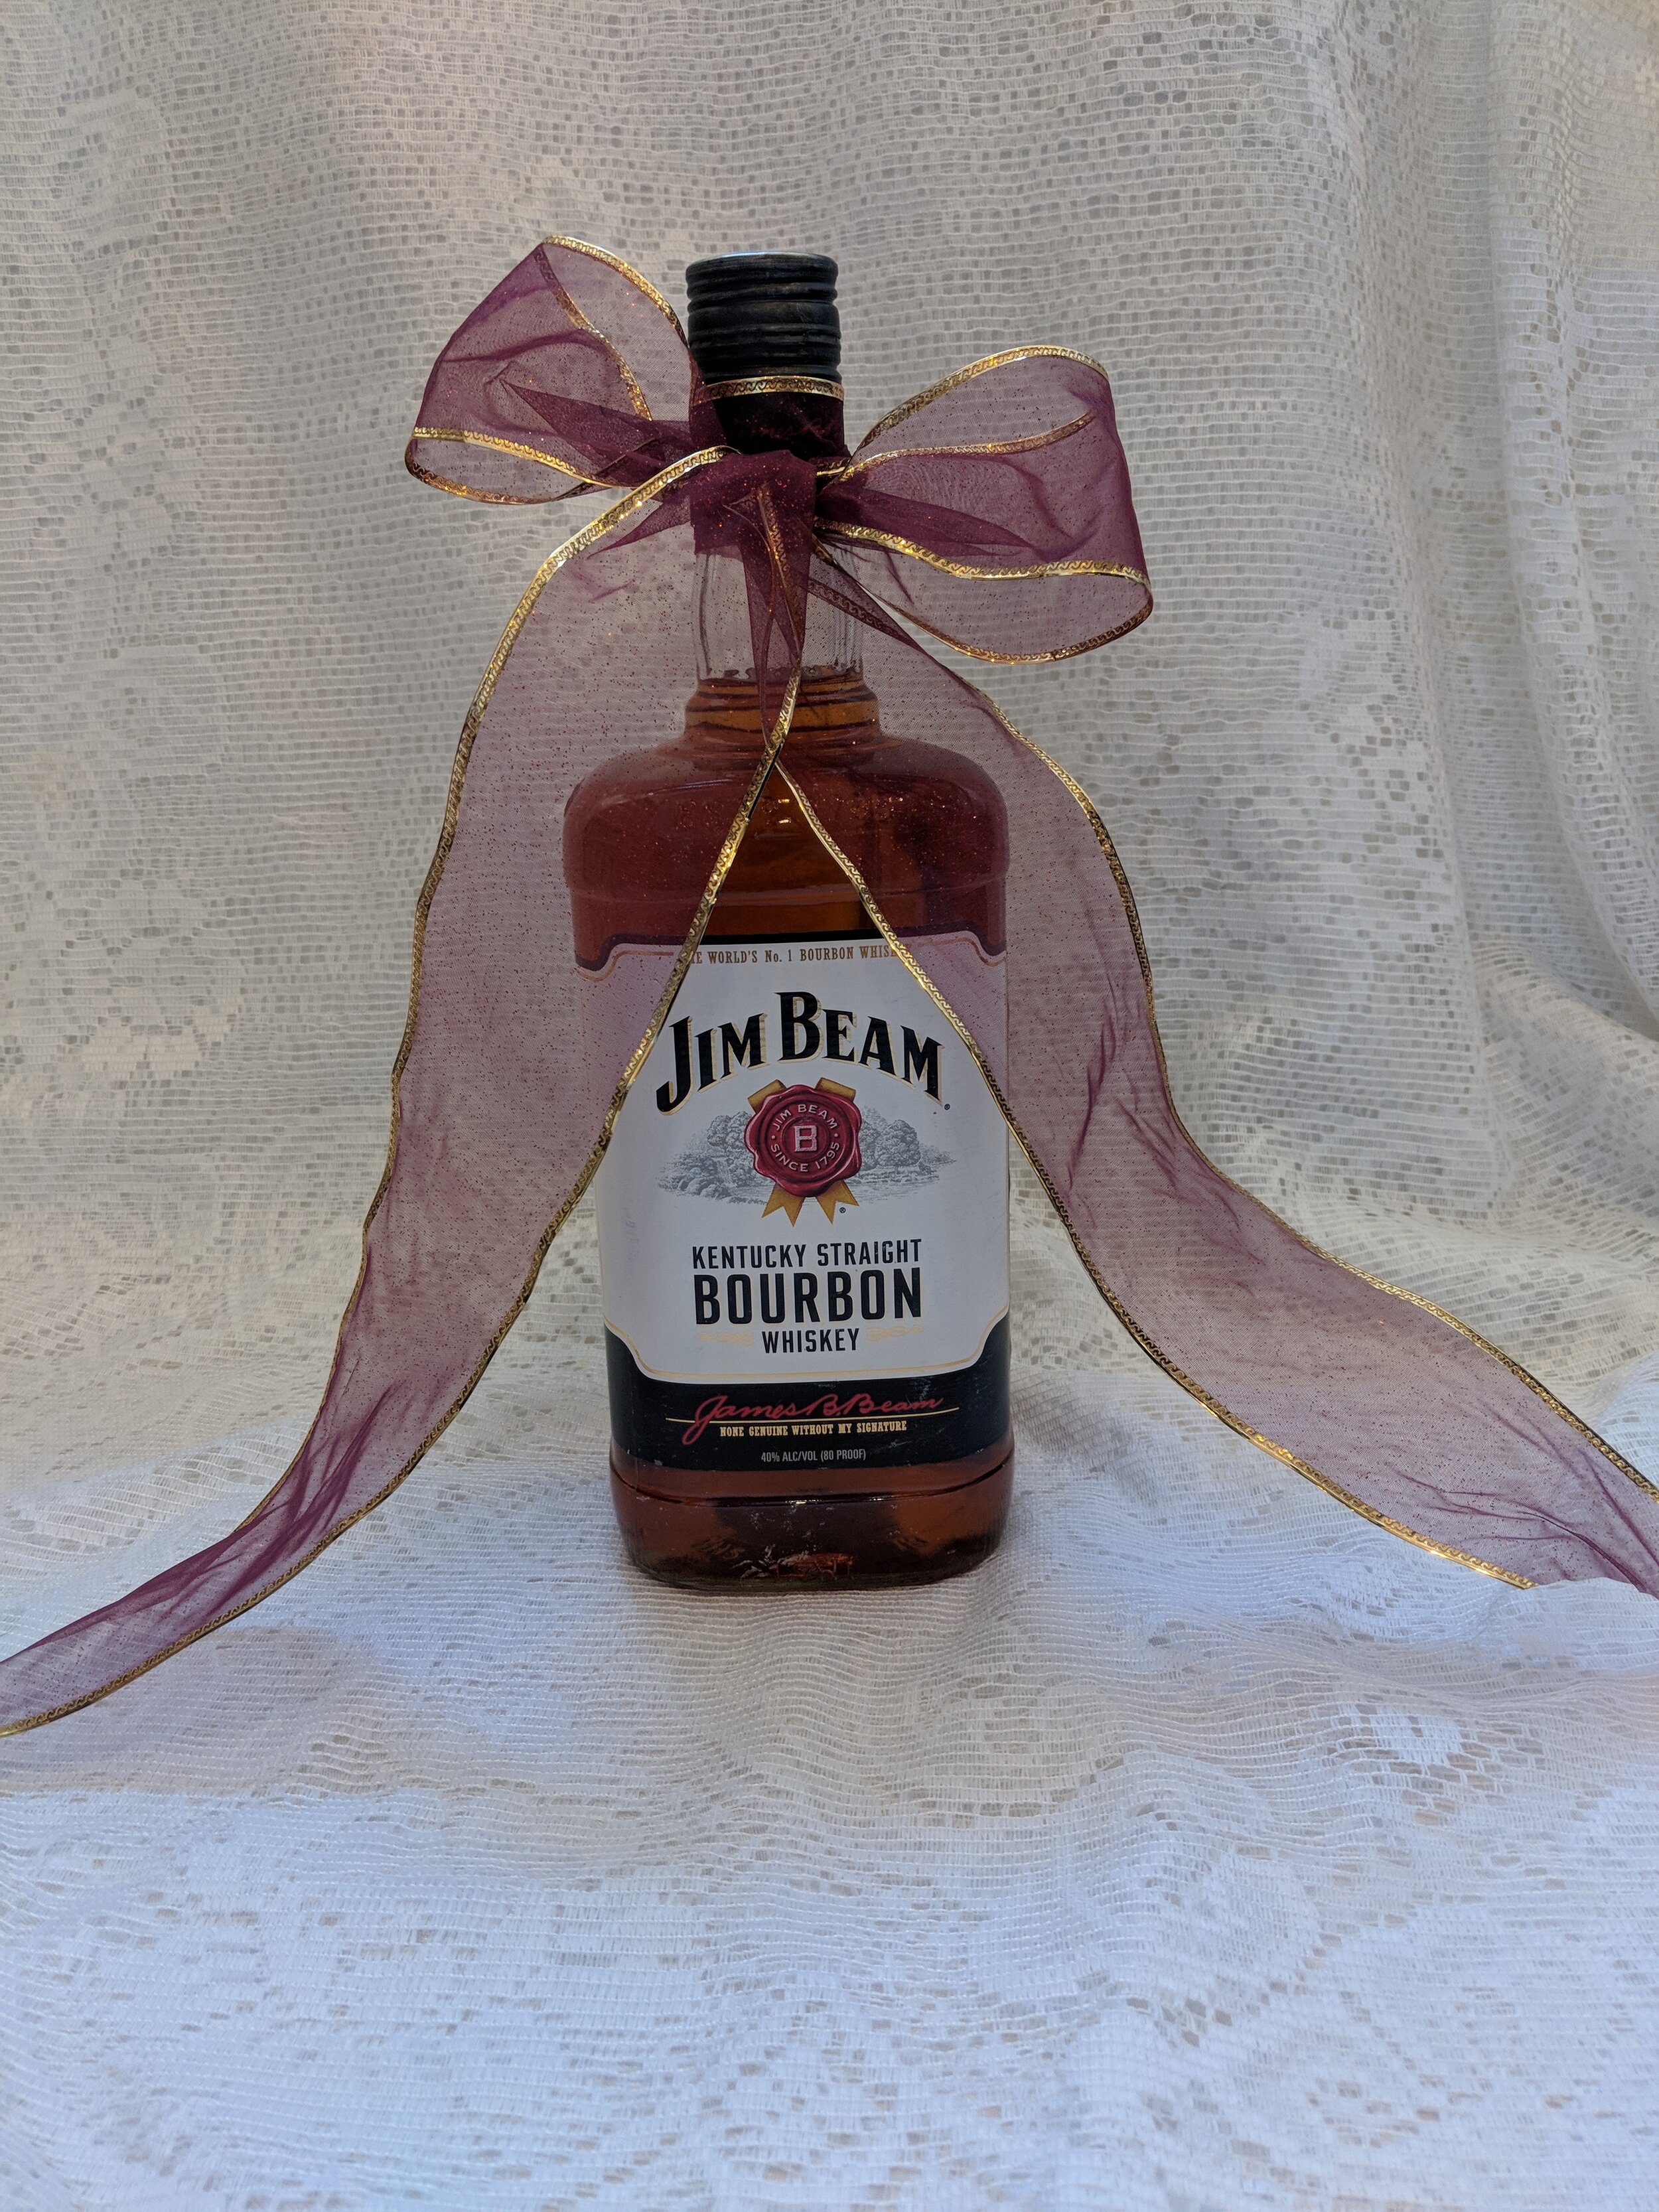 Bottle of Jim Beam